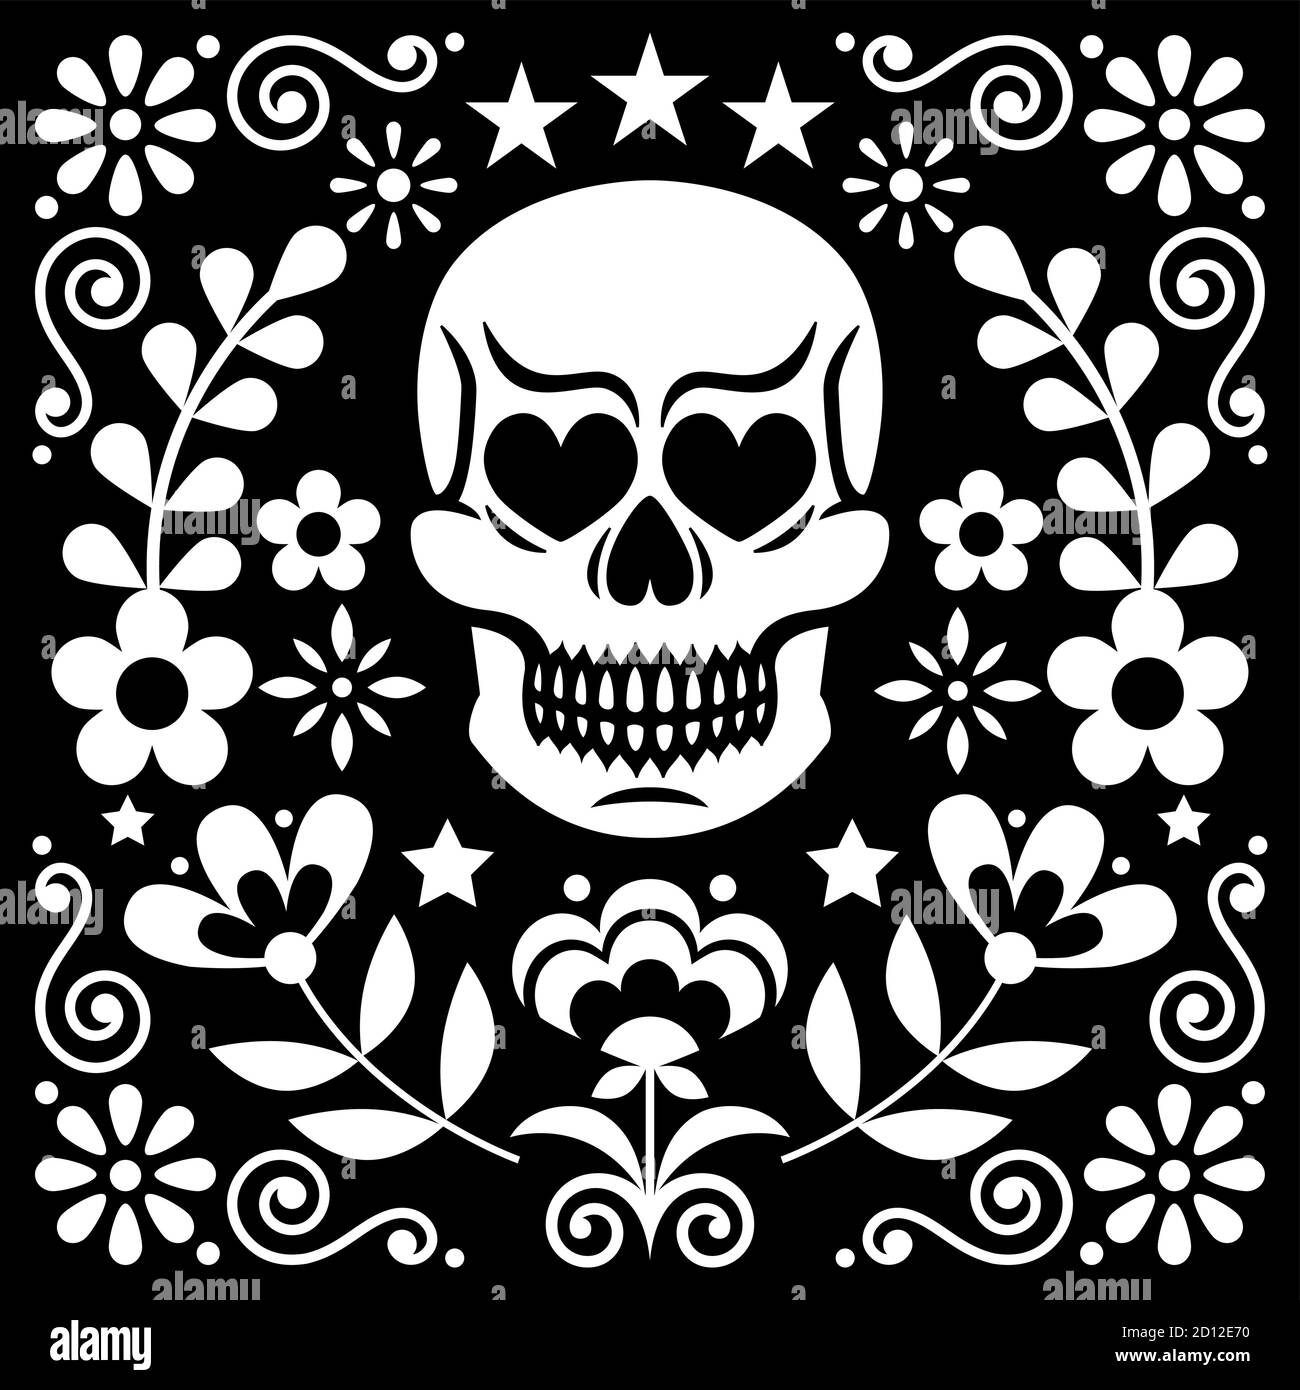 Disegno vettoriale del cranio e dei fiori messical, decorazione floreale bianca di Halloween e di giorno dei morti su nero - stile di arte popolare Illustrazione Vettoriale